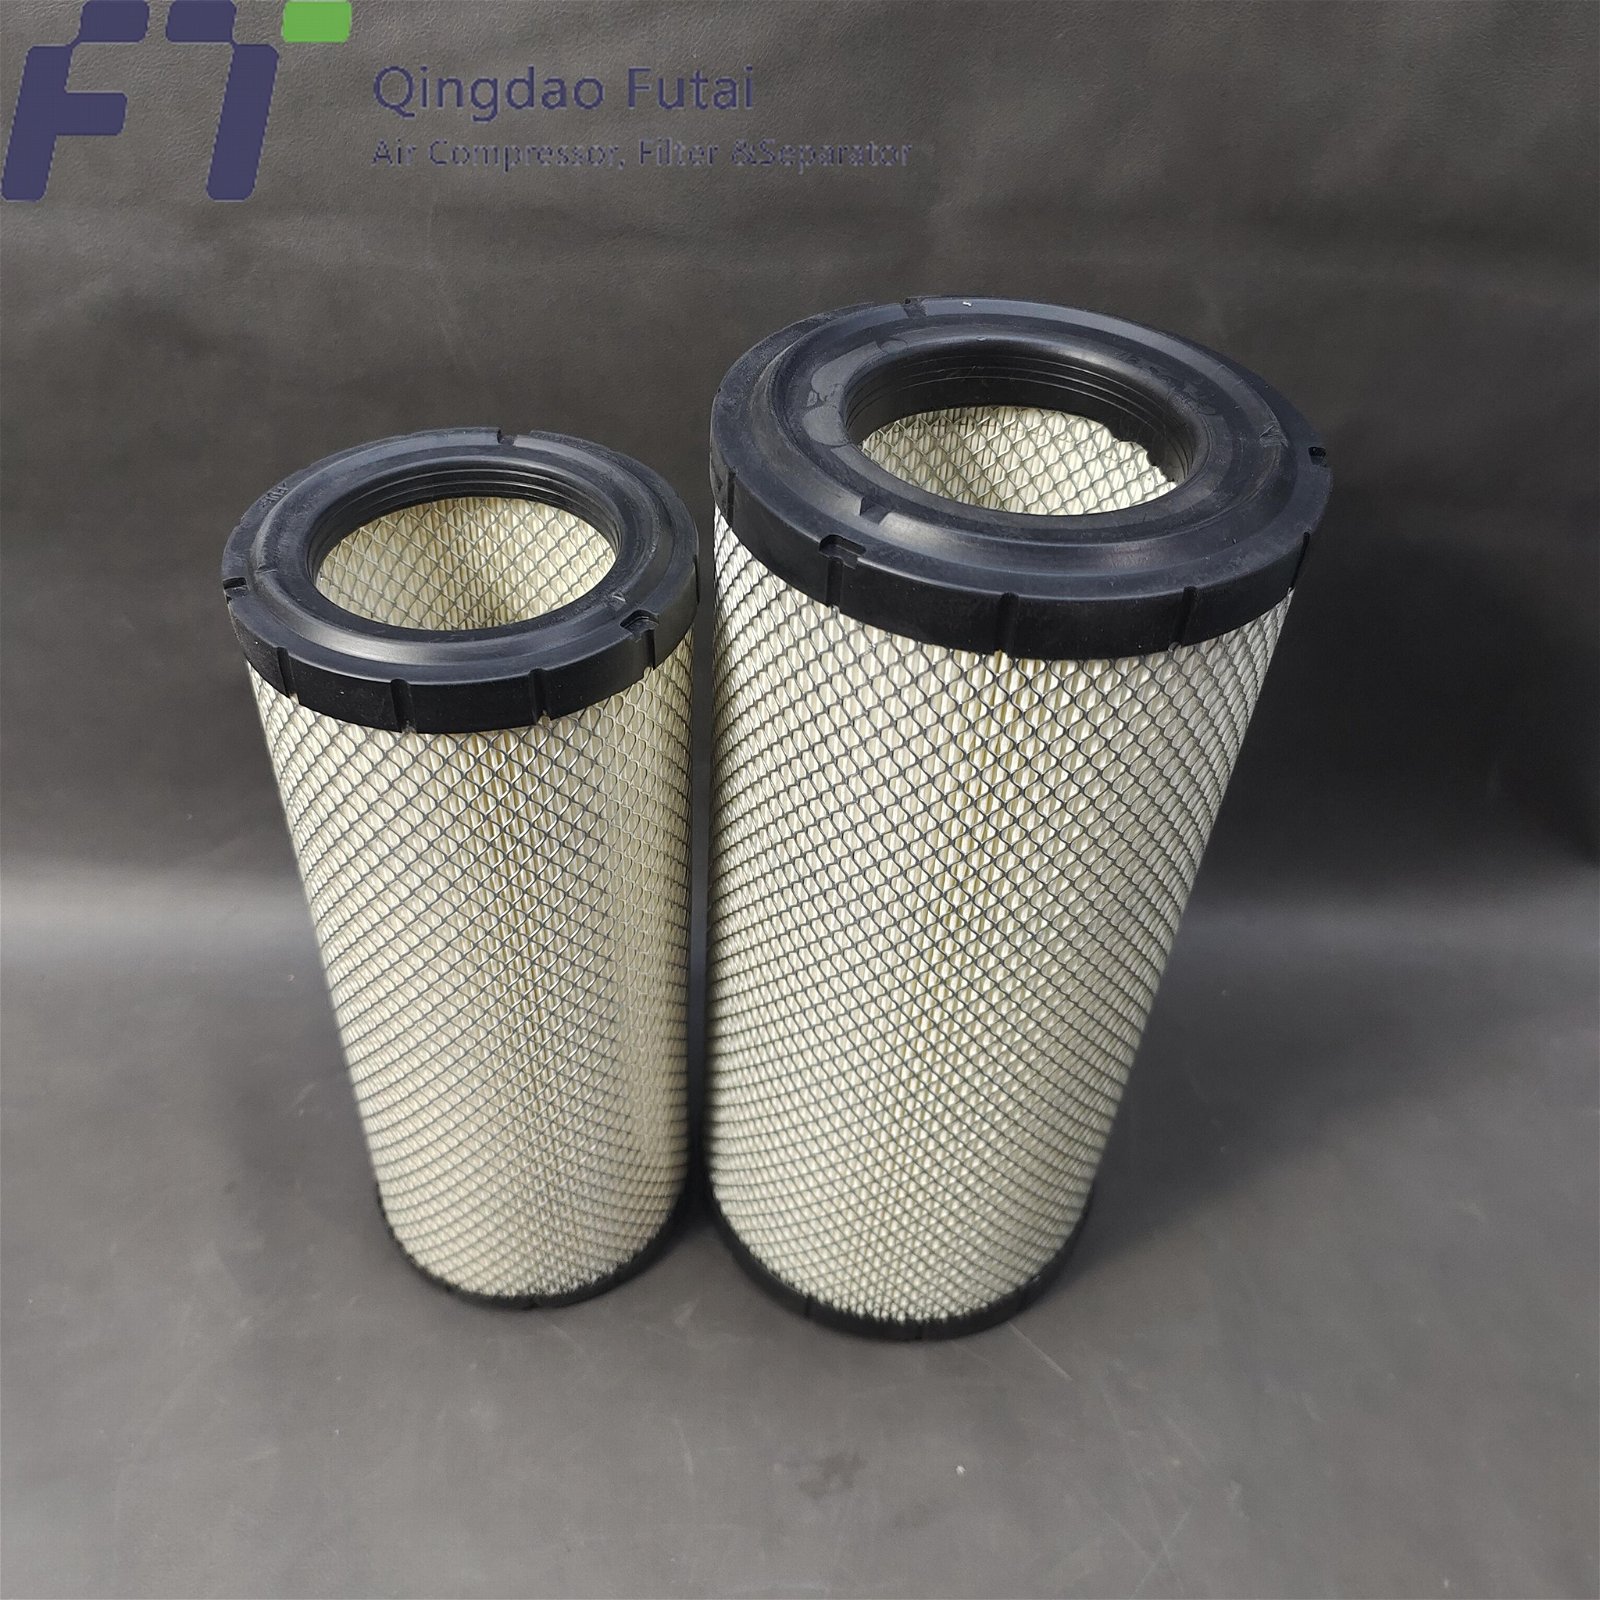 Fusheng Air Filter 71141111-66010 Air Compressor Parts